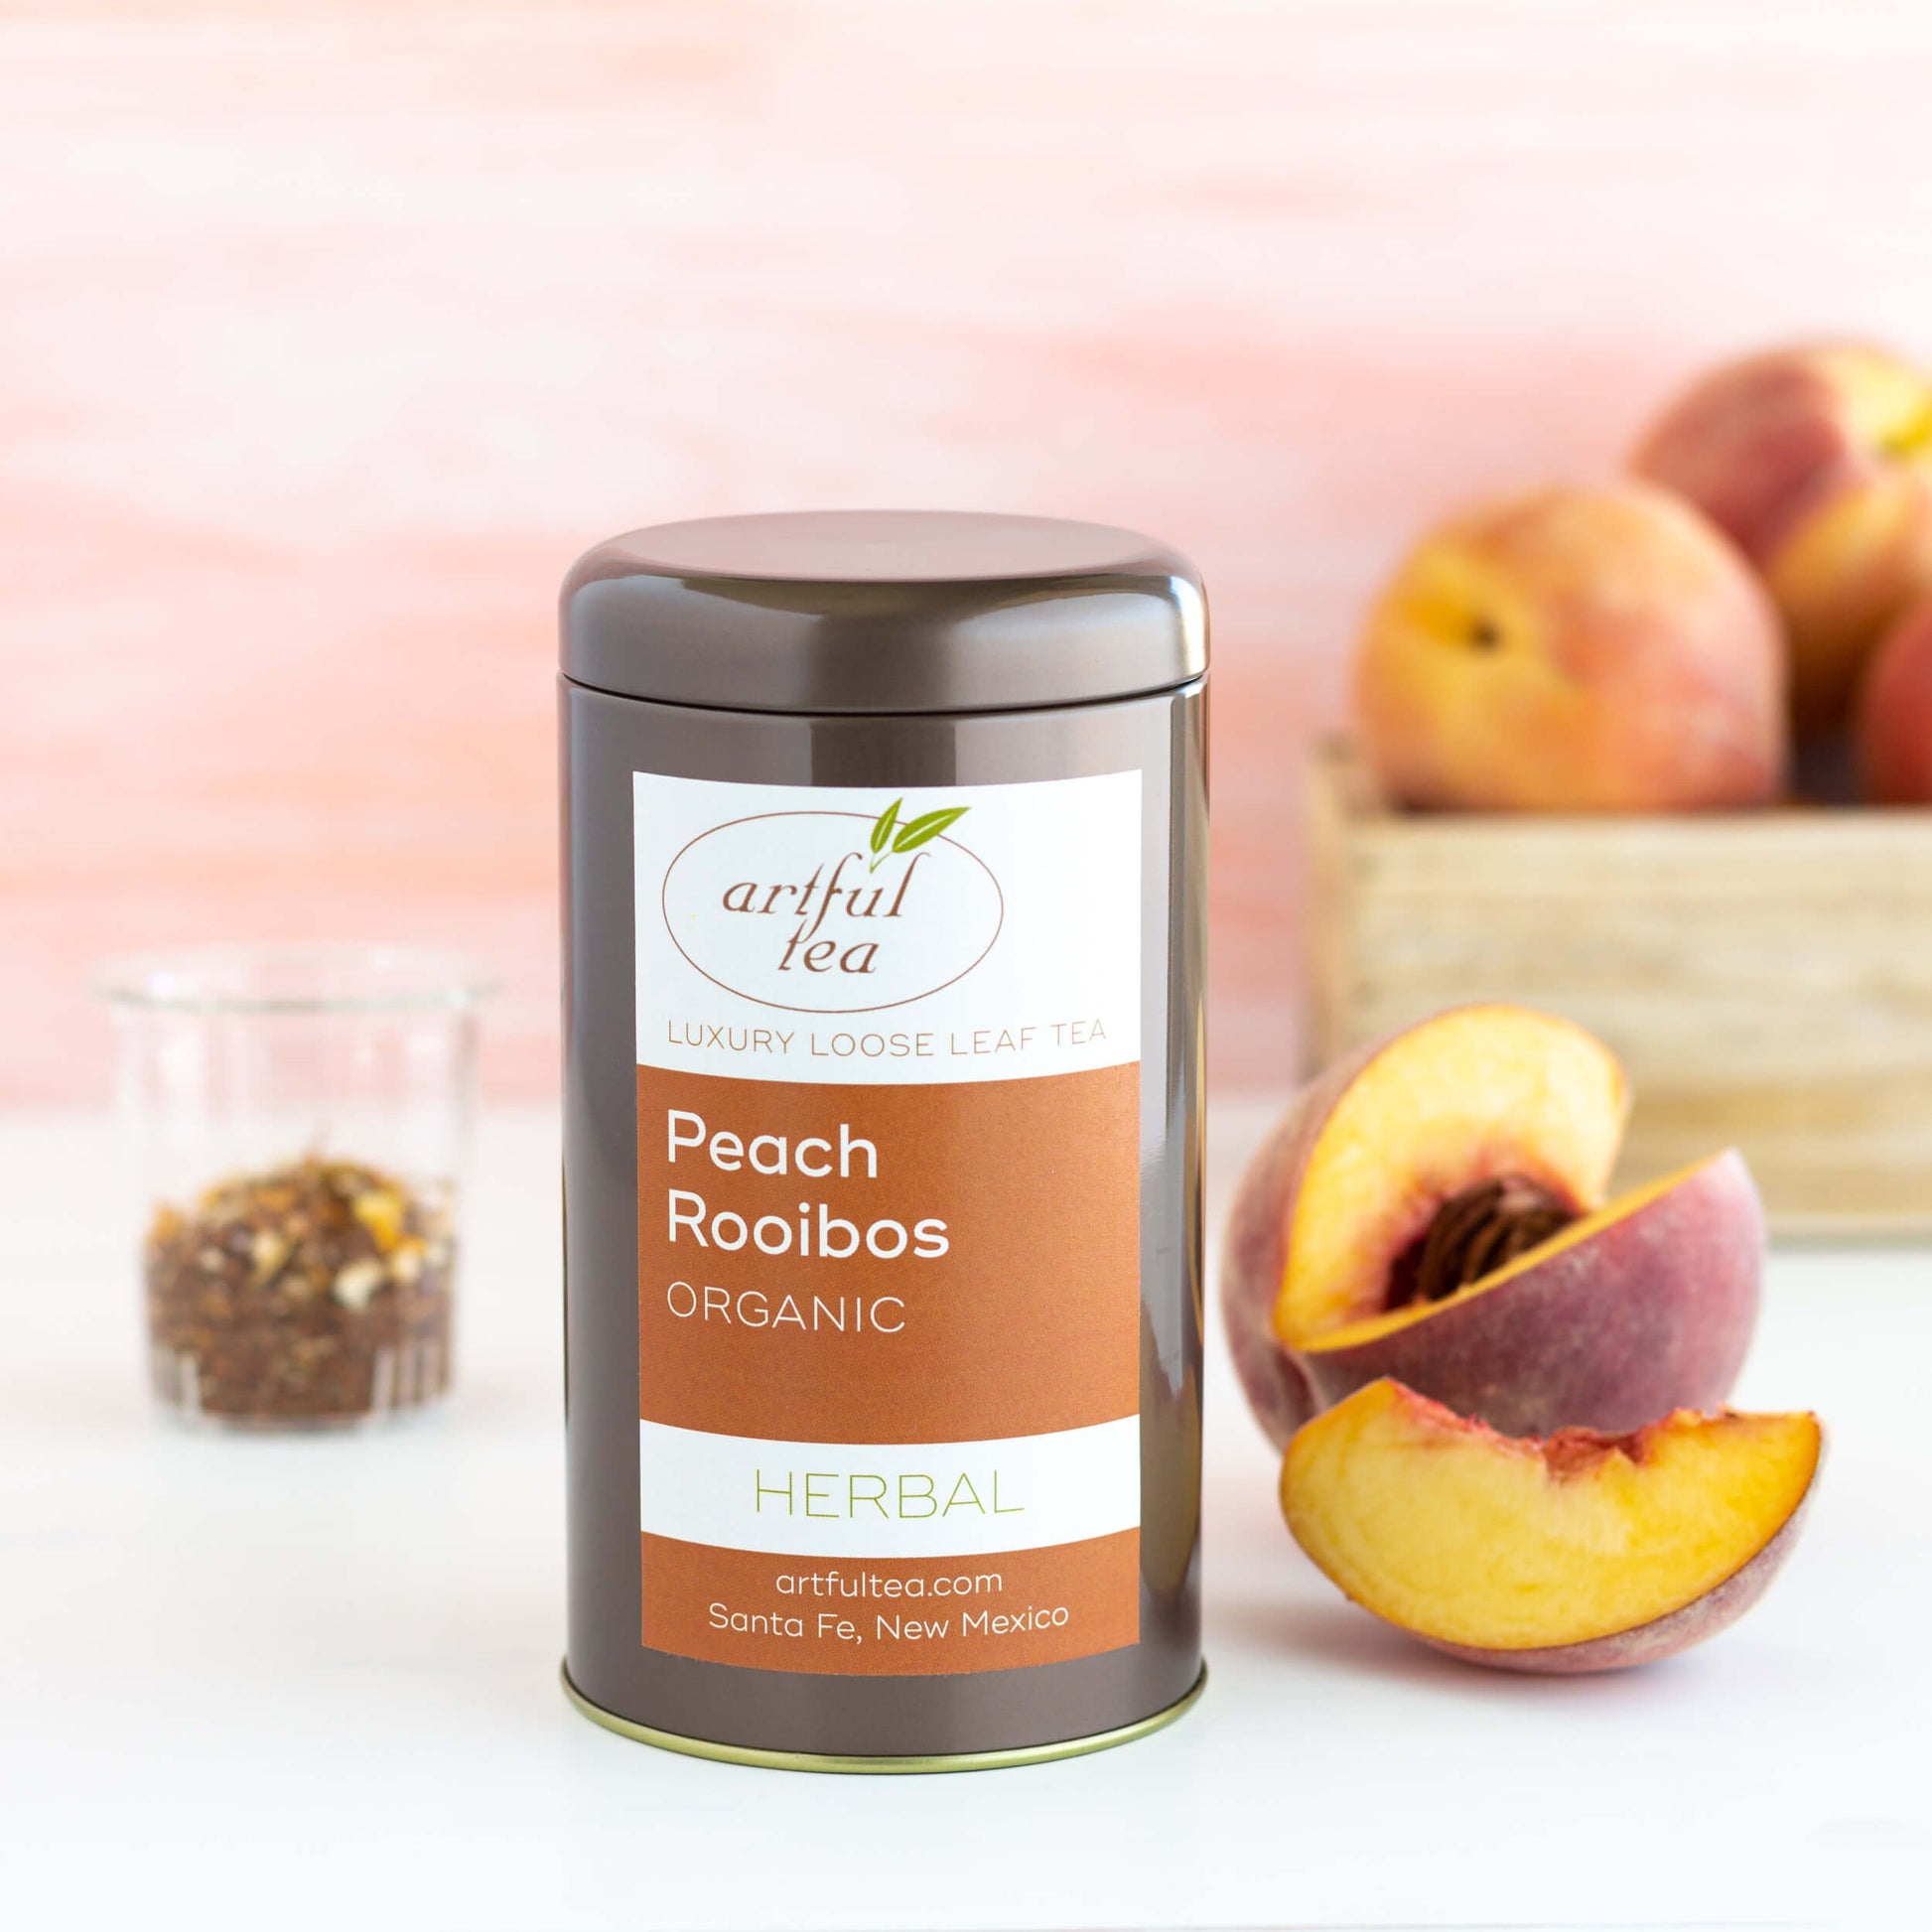 Embrew Tea Summer Peach Rooibos Sweetened Herbal Tea Bags